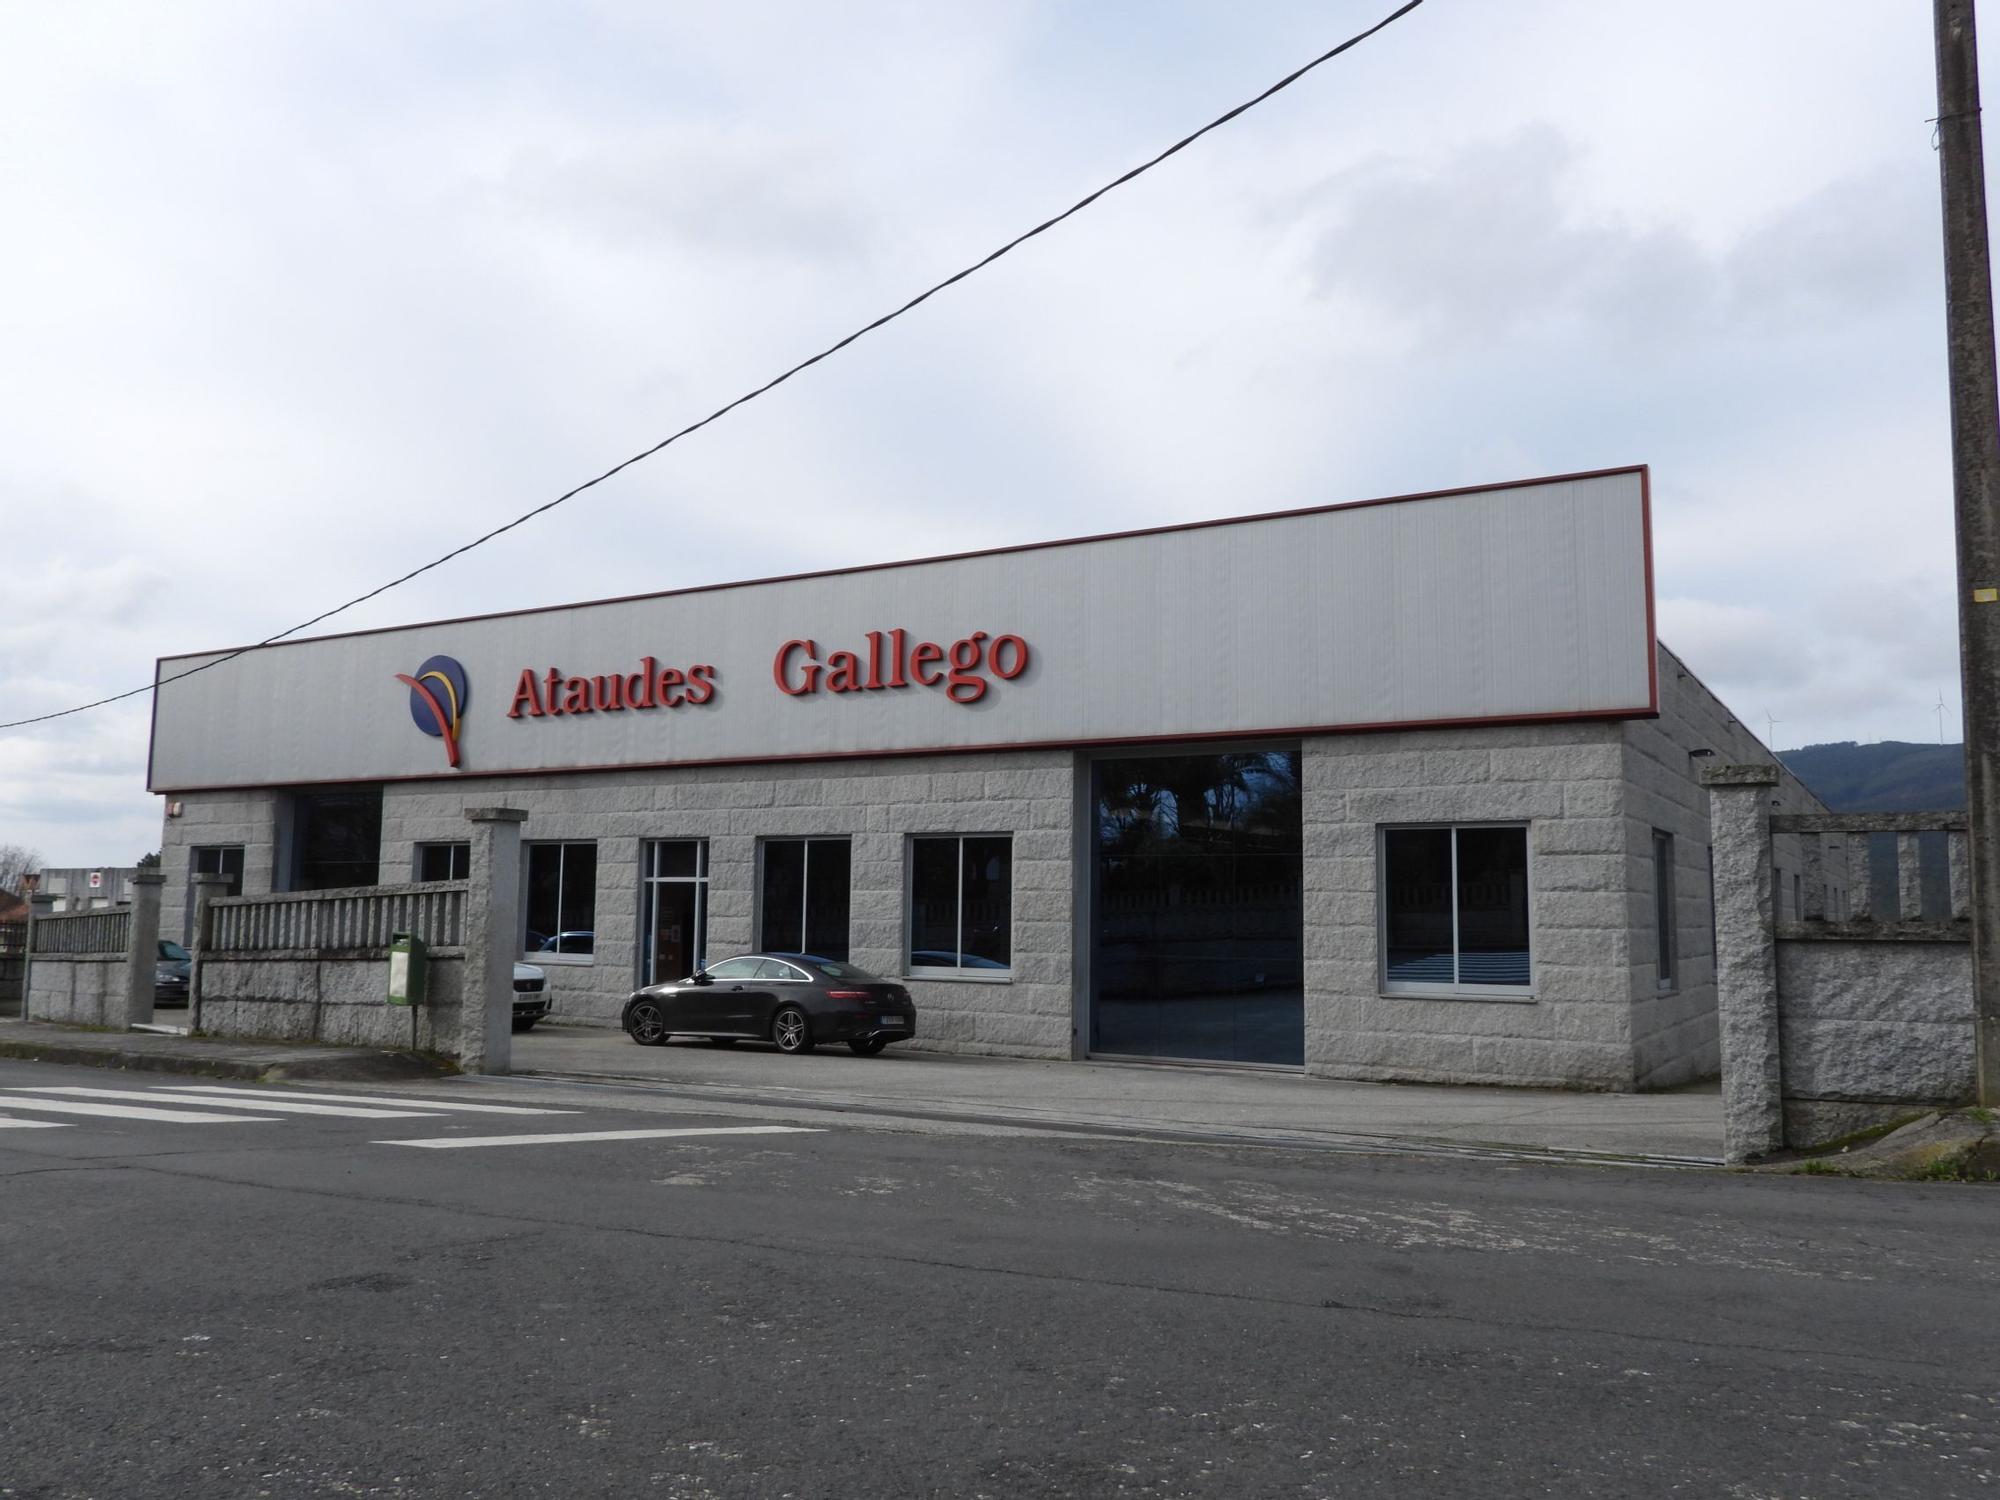 La industria del ataúd crece en Ourense